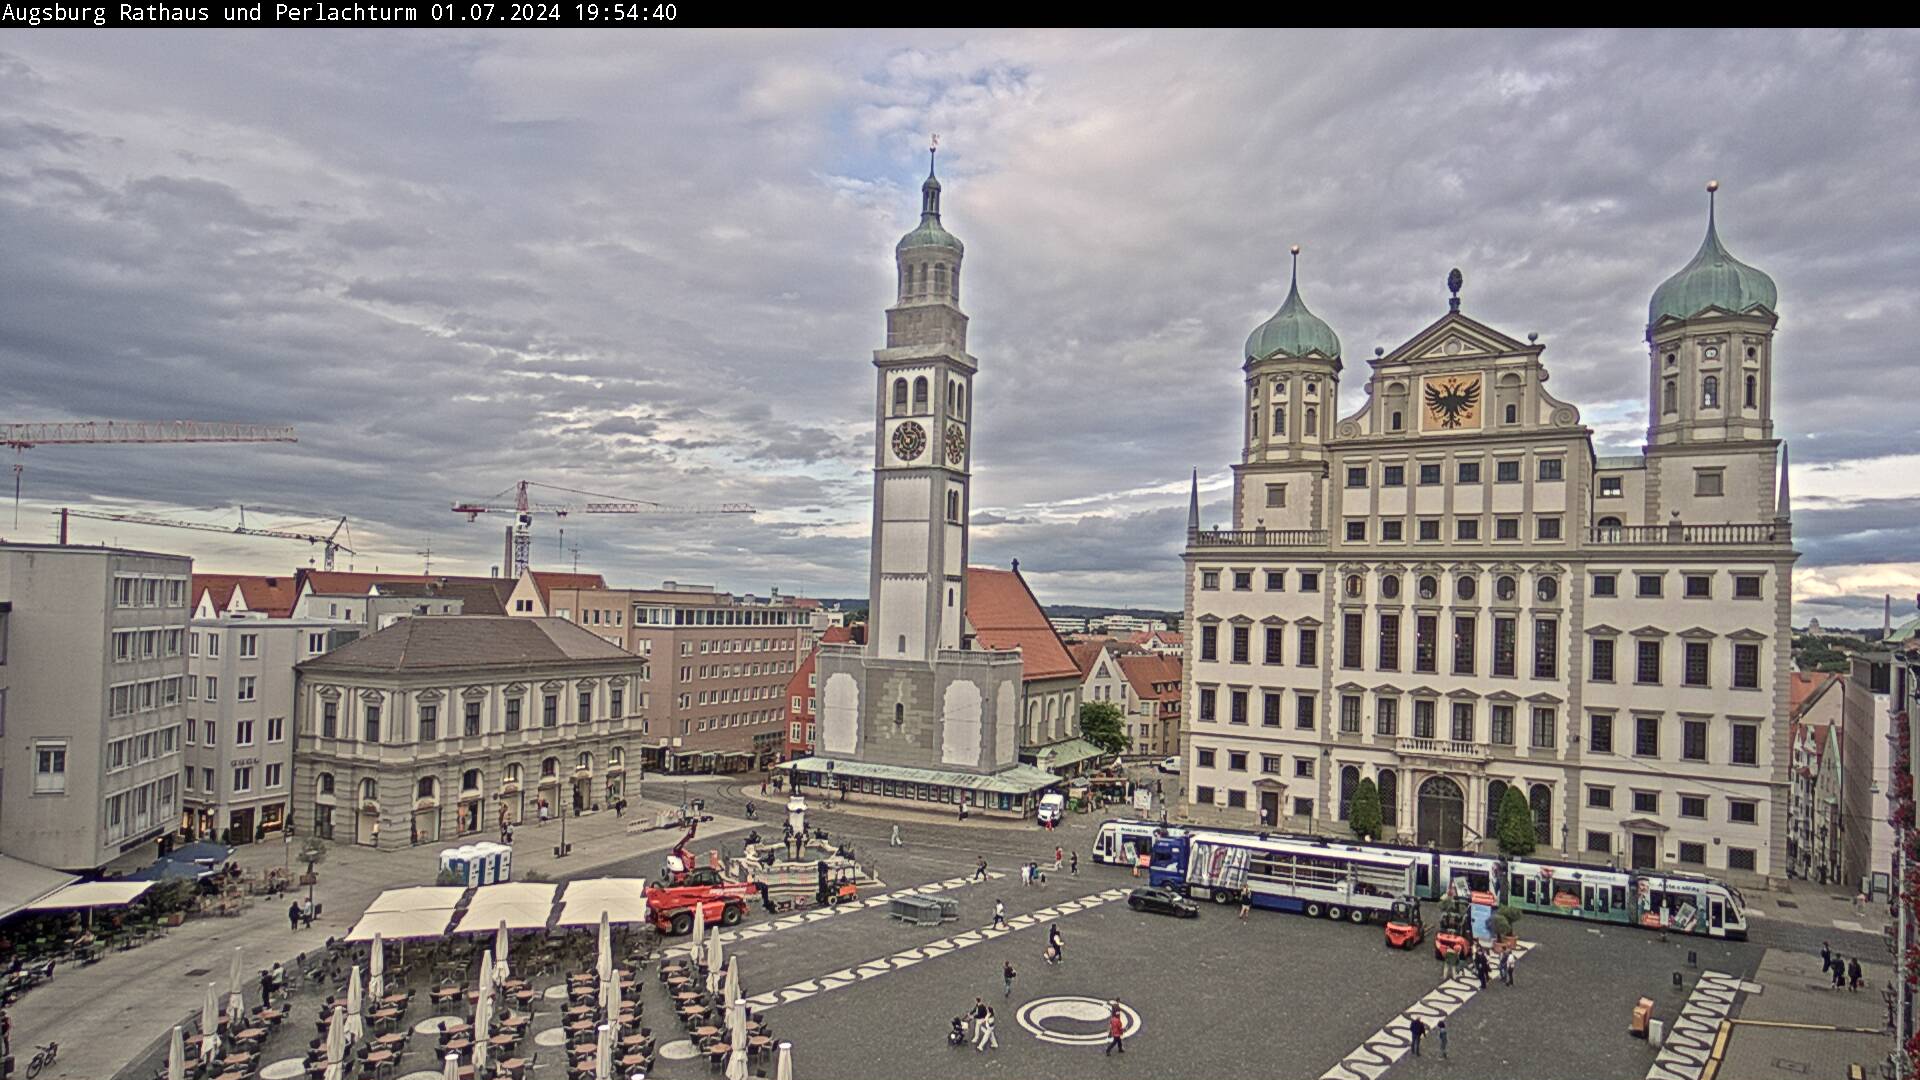 Webcam Perlachturm und Rathaus